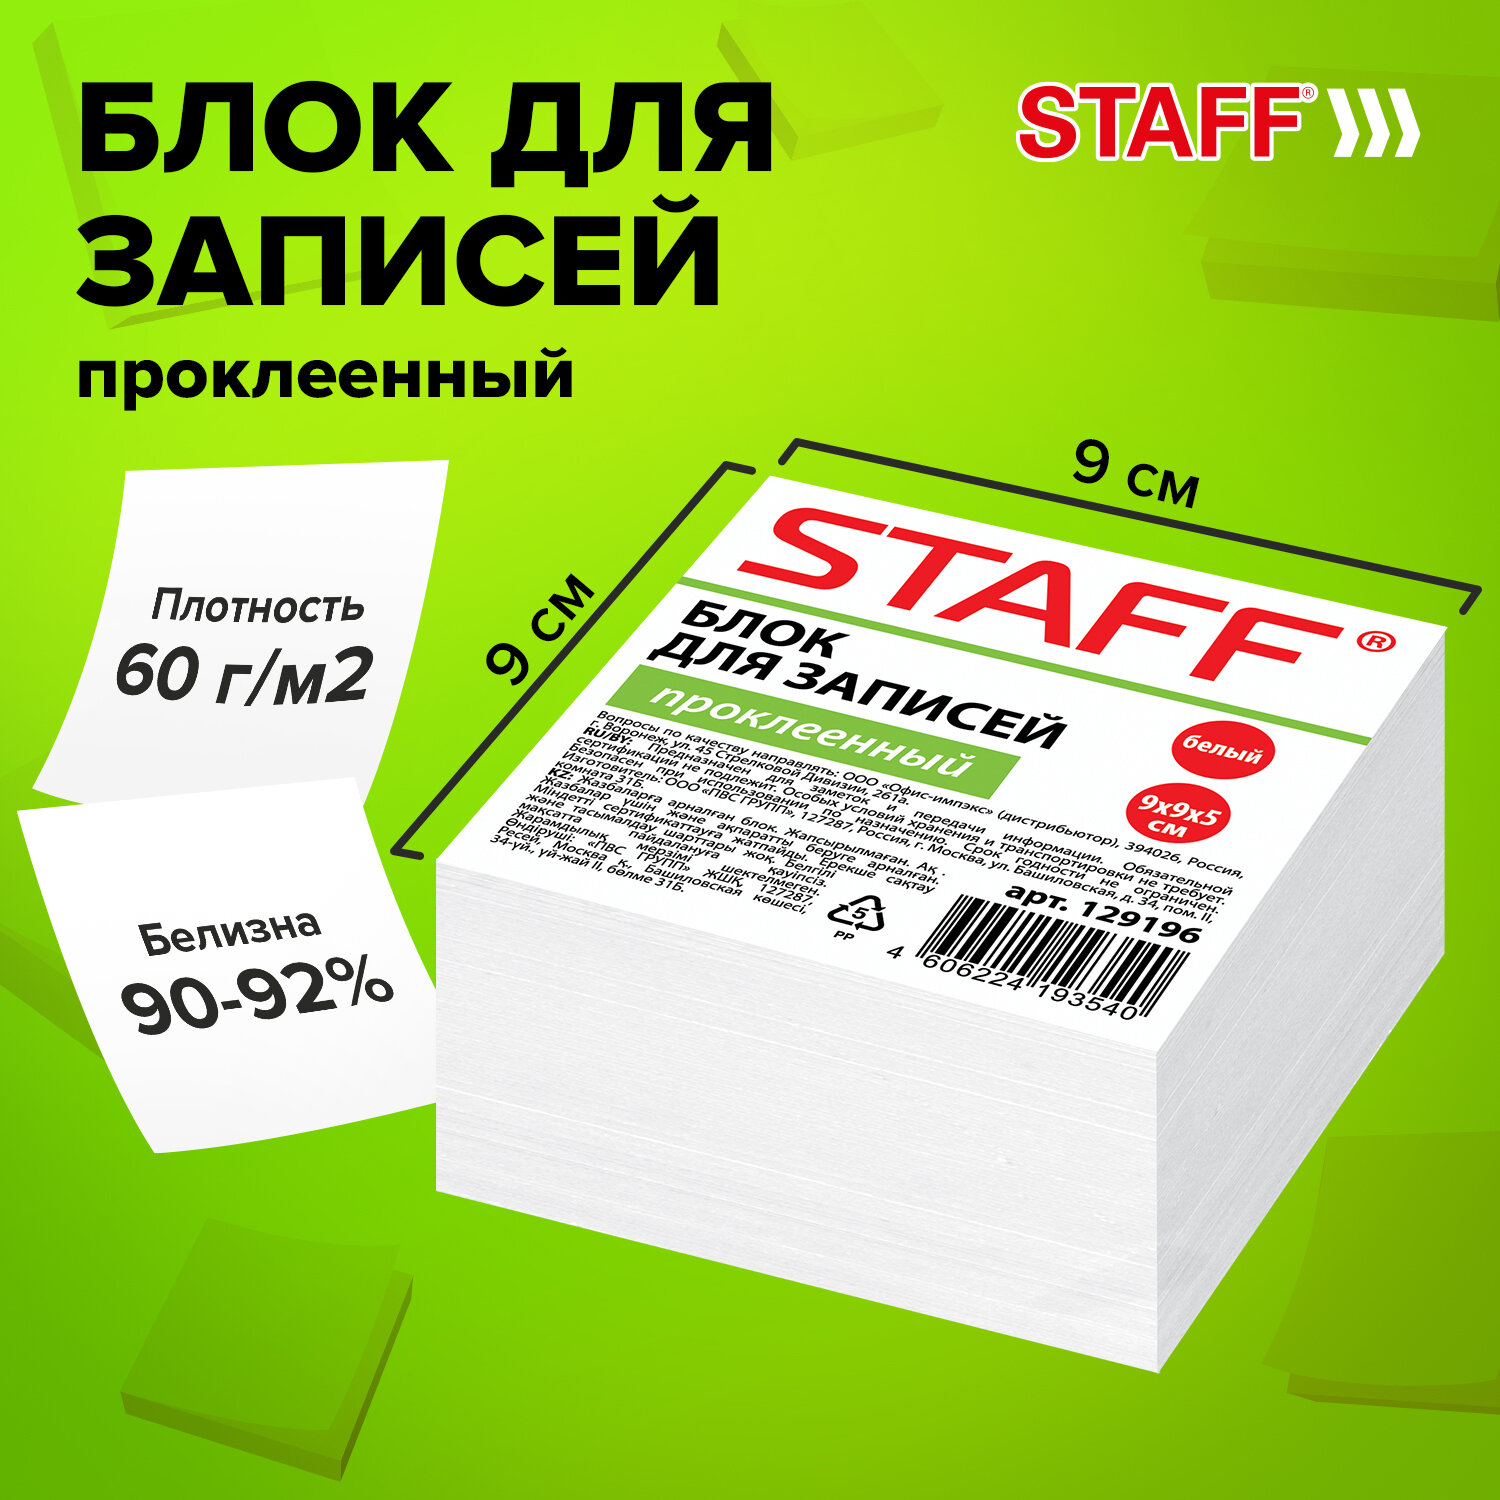 STAFF  STAFF 129196